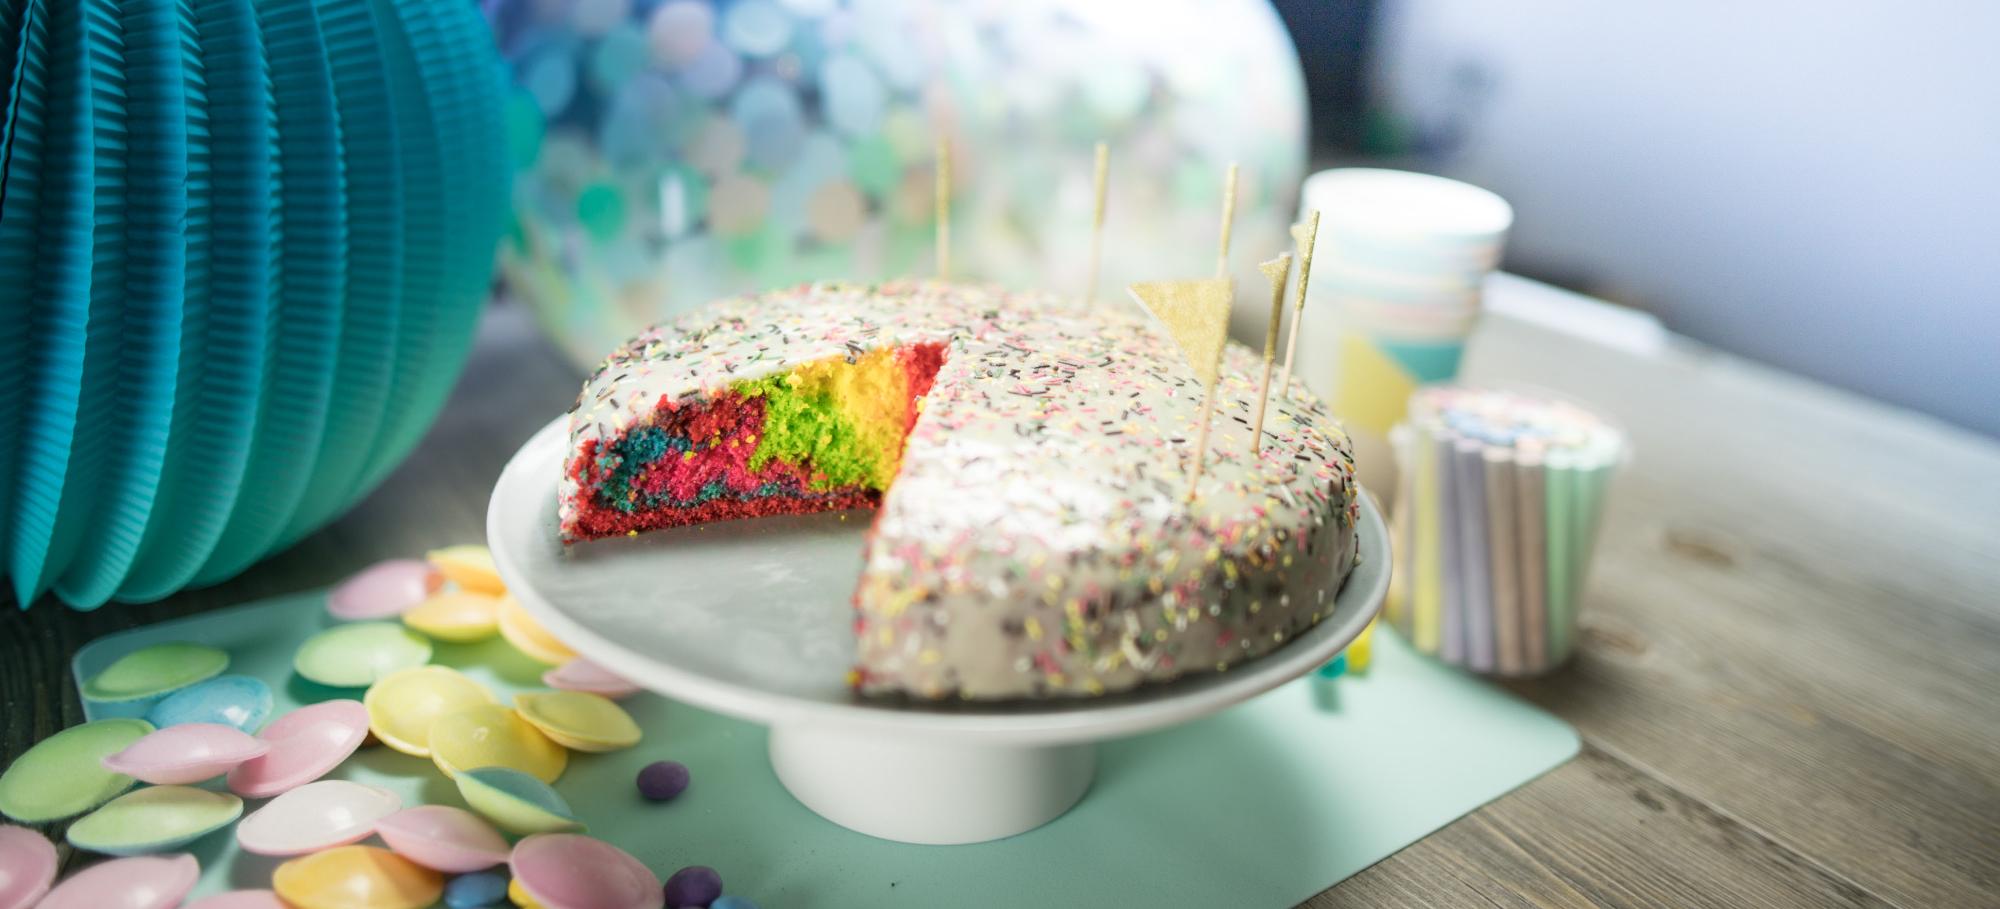 Mes Recettes Rainbow cake gâteau arc-en-ciel anniversaire